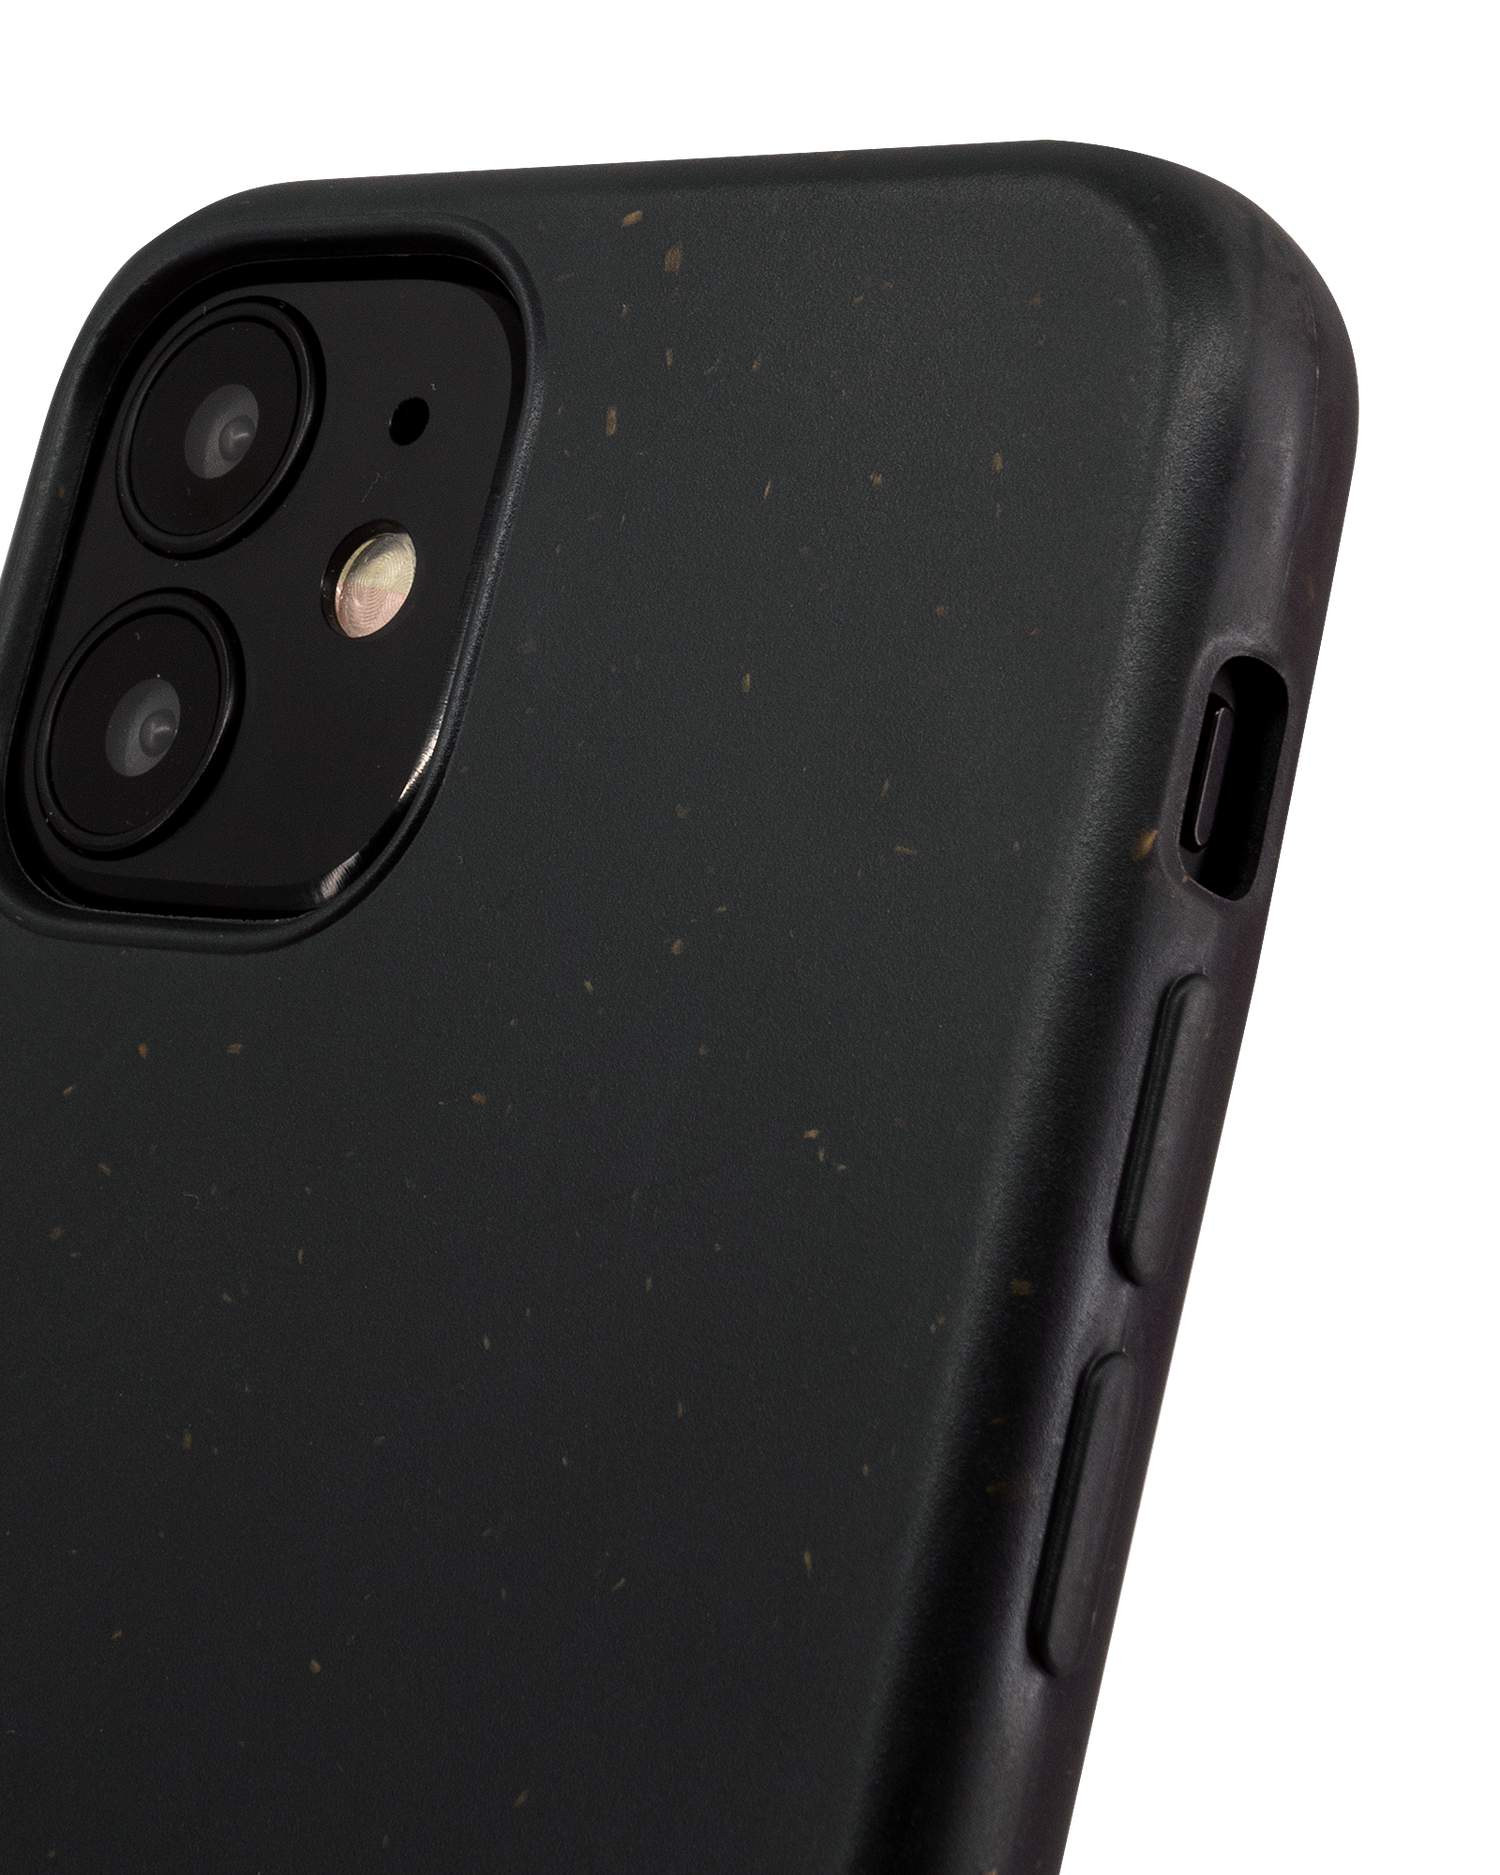 Schwarze Nachhaltige Handyhülle für Apple iPhone 12 mini: Details Innen